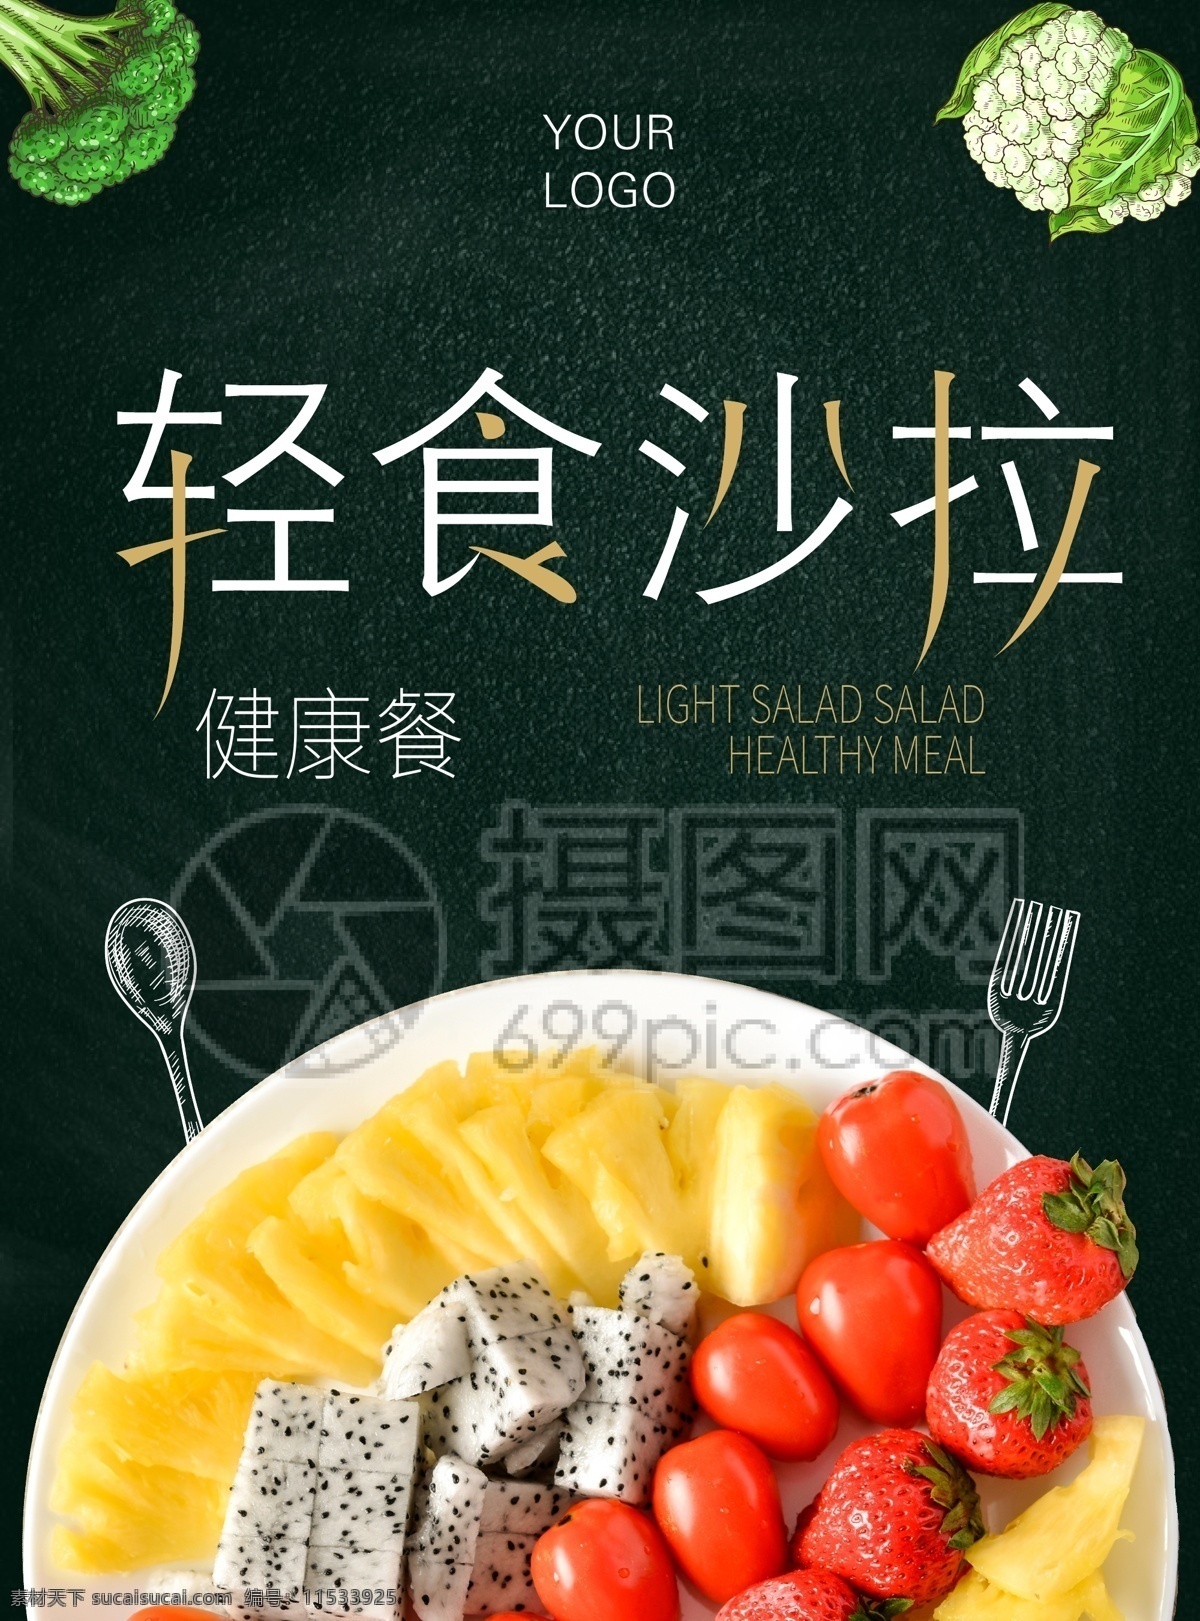 轻 食 沙拉 绿色 健康 美食餐厅 宣传单 轻食沙拉 线性元素 美食 西餐 美食餐饮 轻食 水果 健康养生